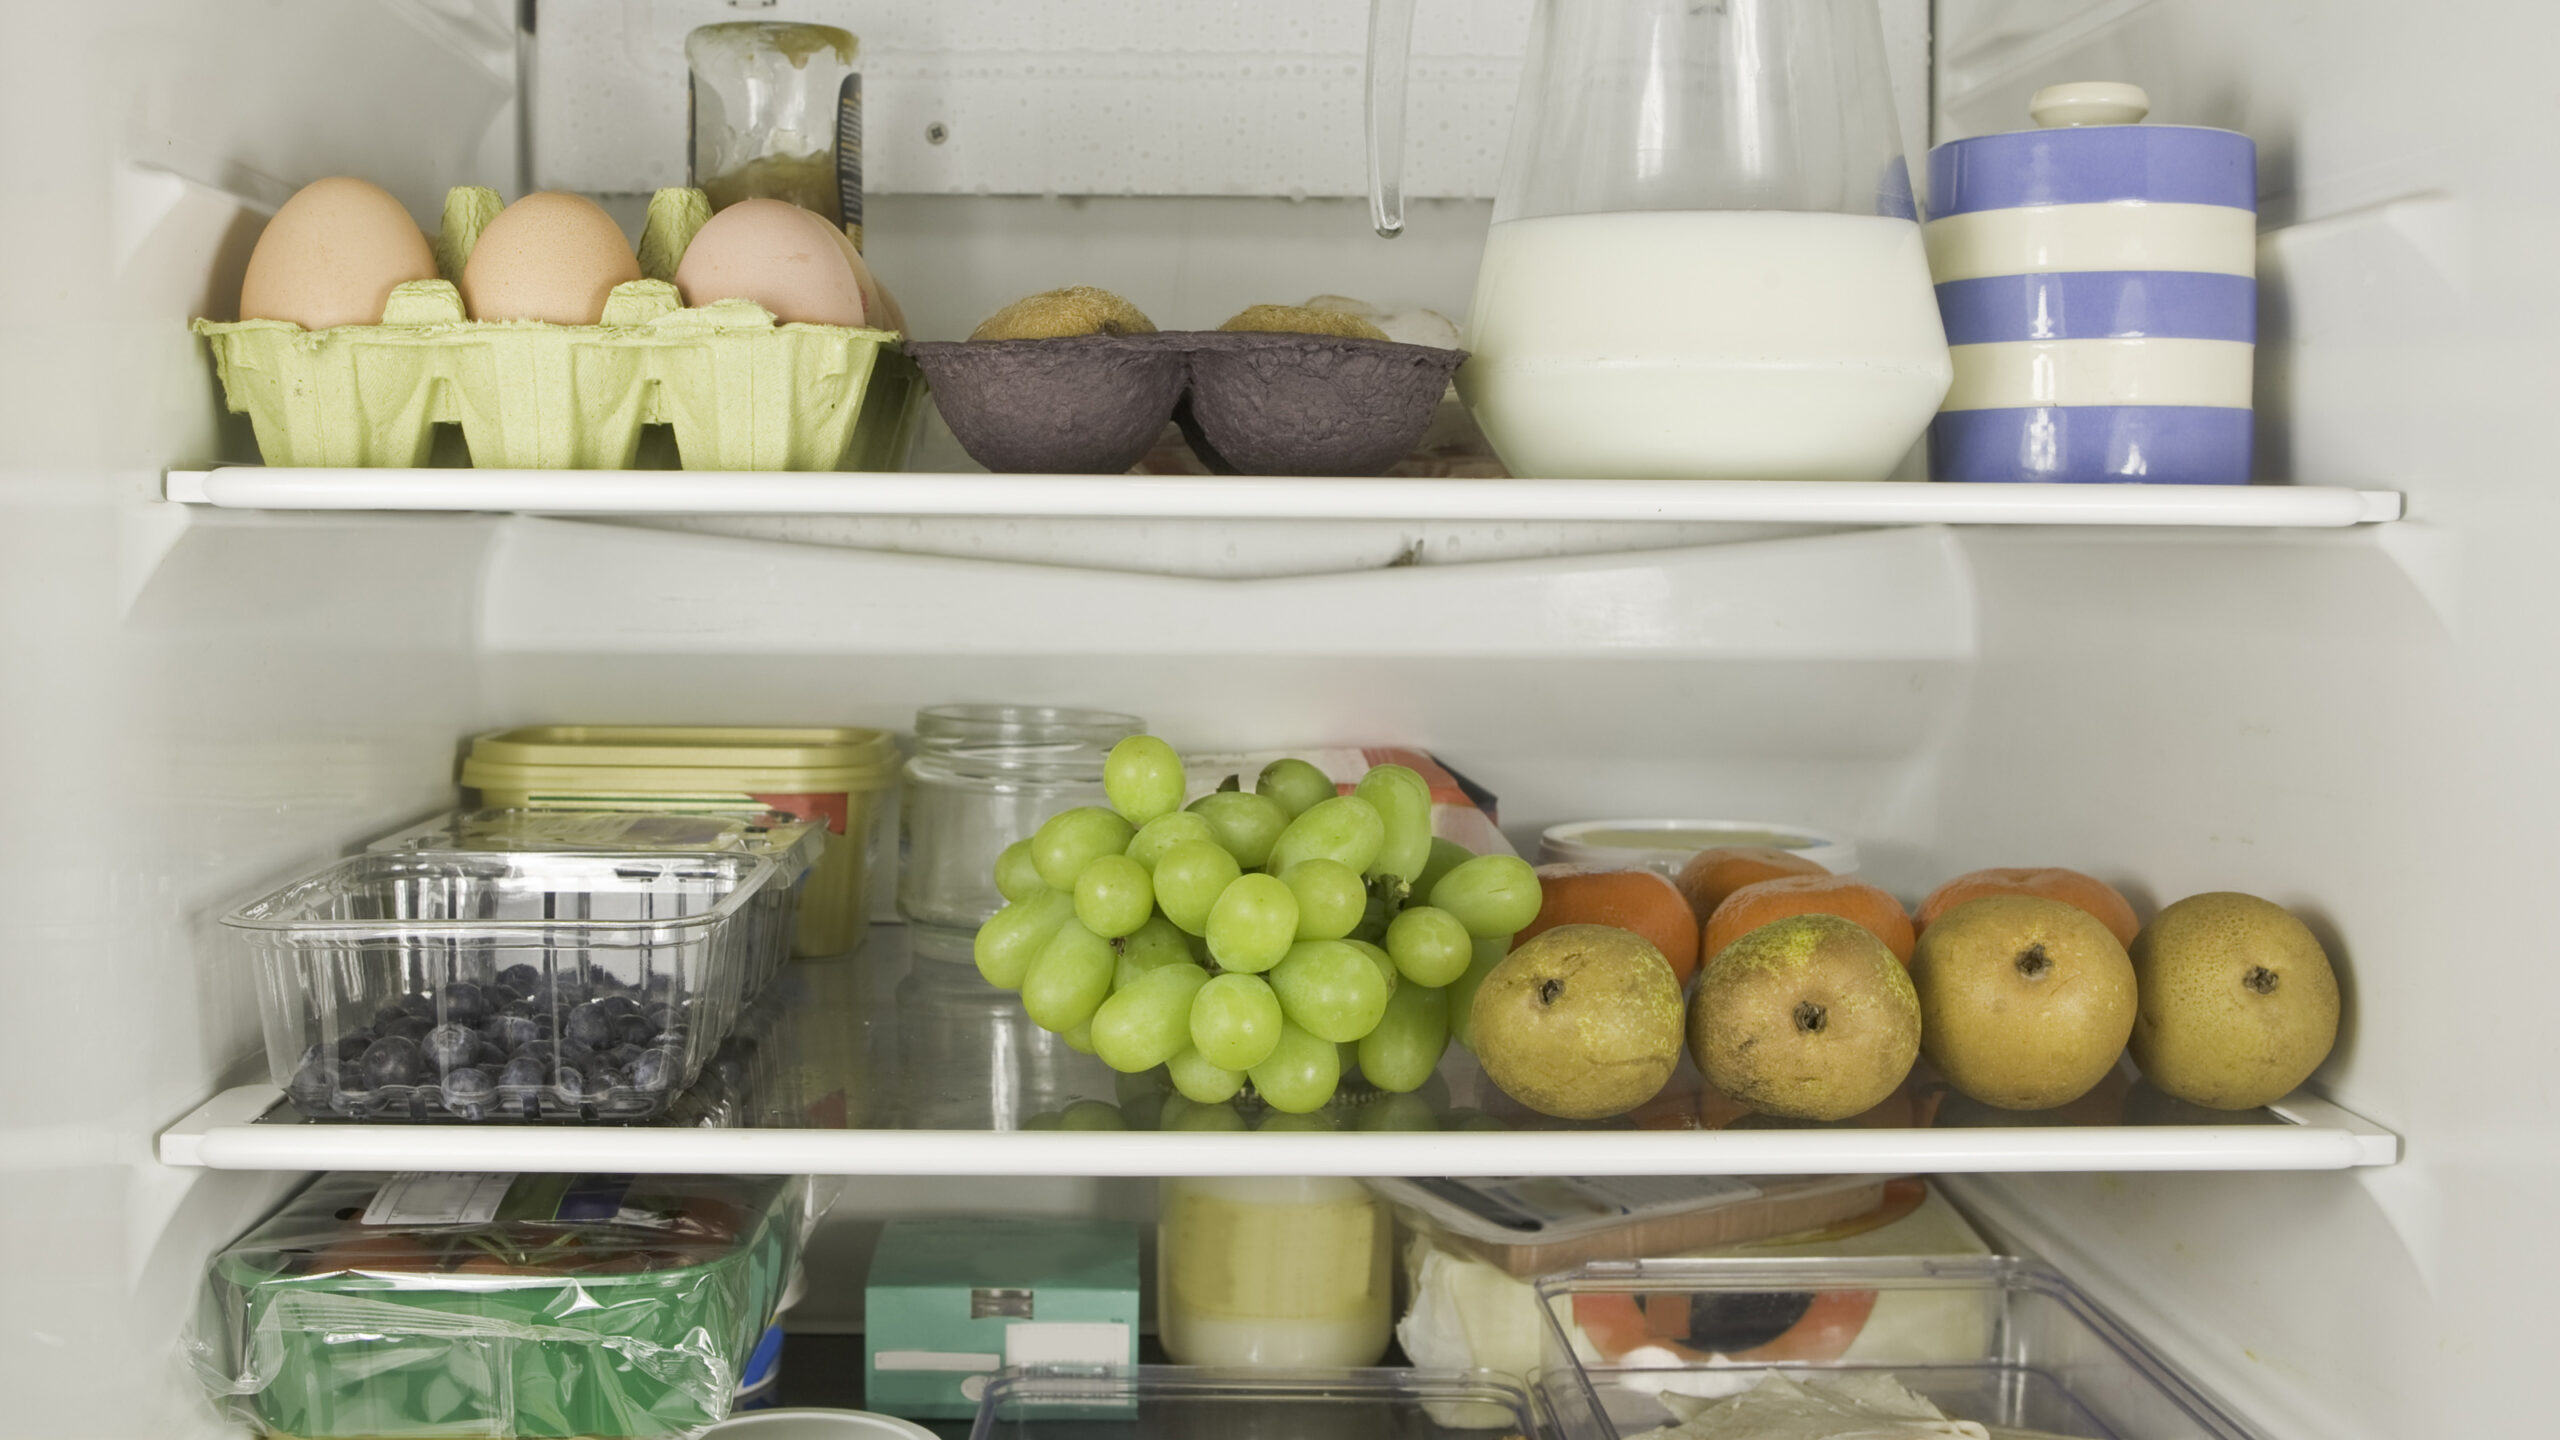 Three refrigerator shelves full of food